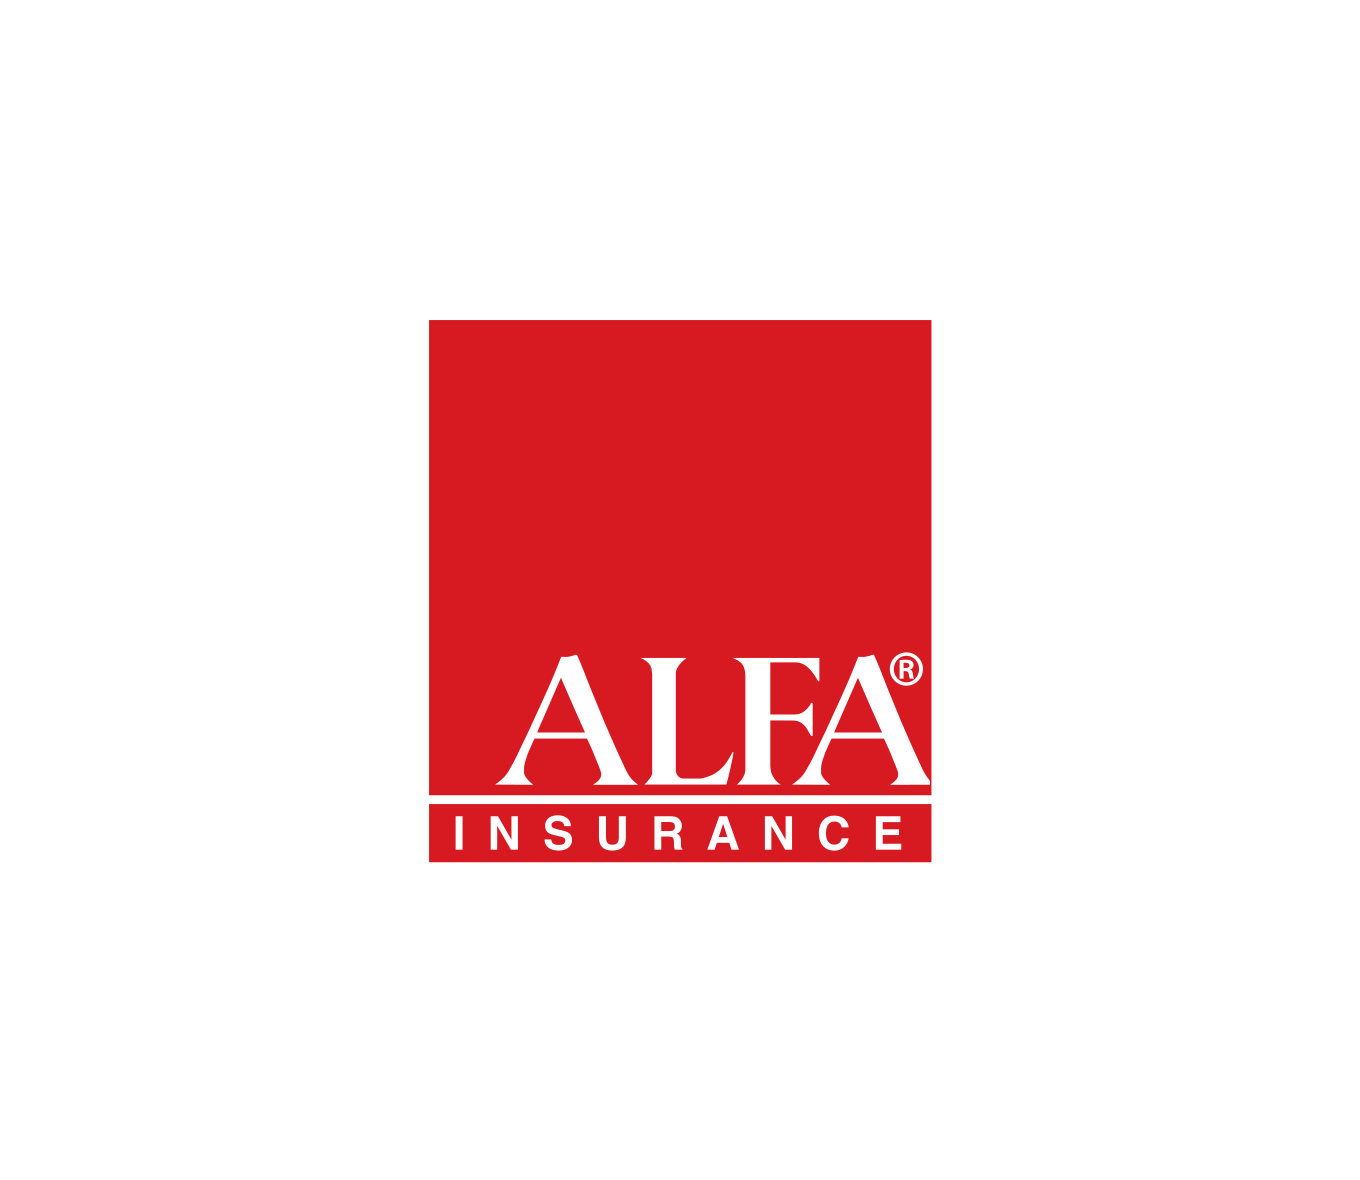 Alfa Insurance Guidewire